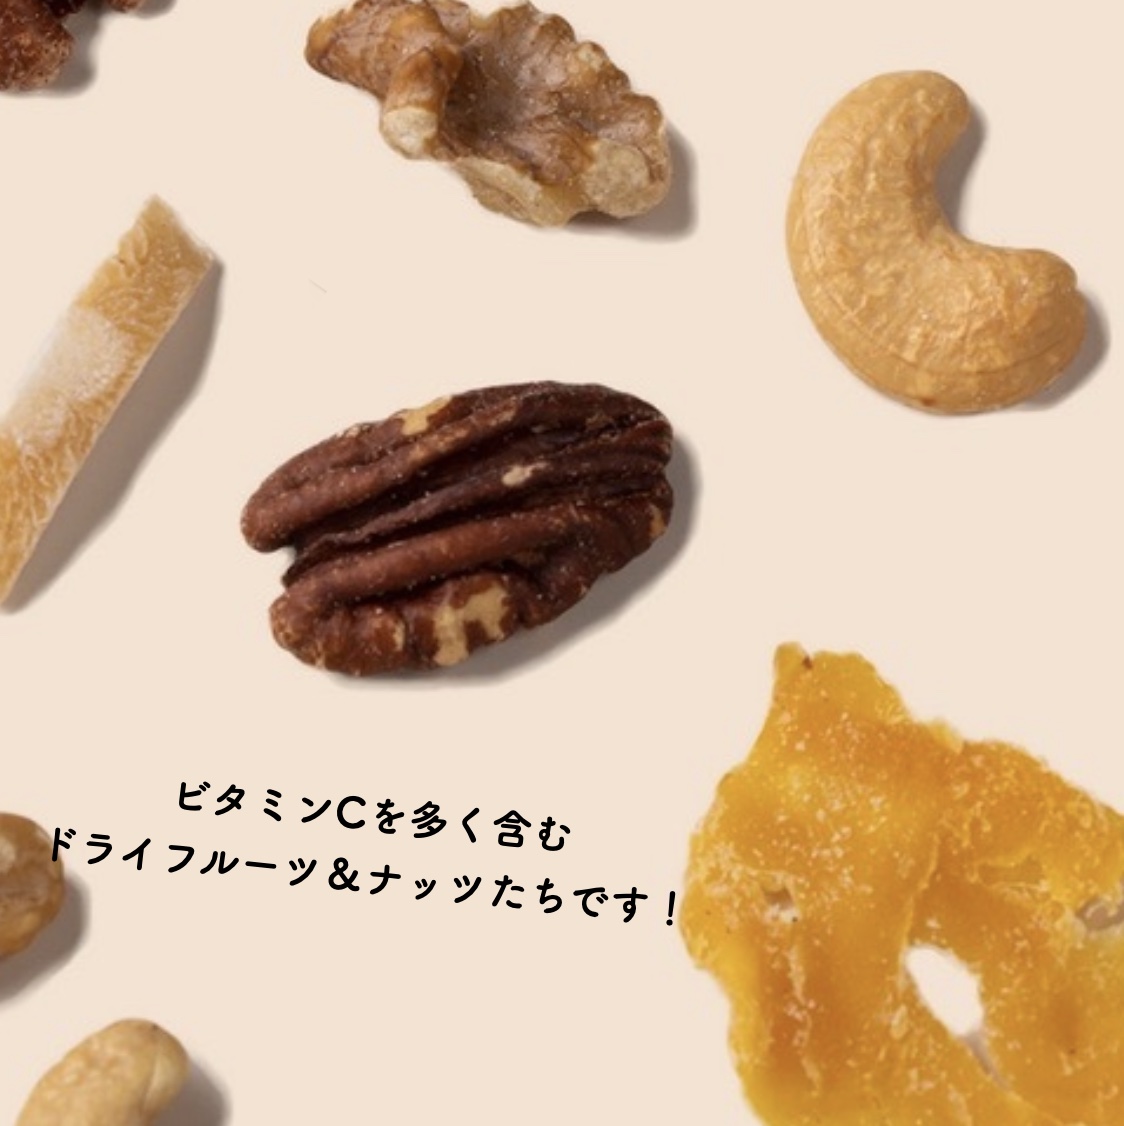 更年期専門店オアディスワンのおきかえナッツ「こうねんきっす」に含まれるナッツのイメージ